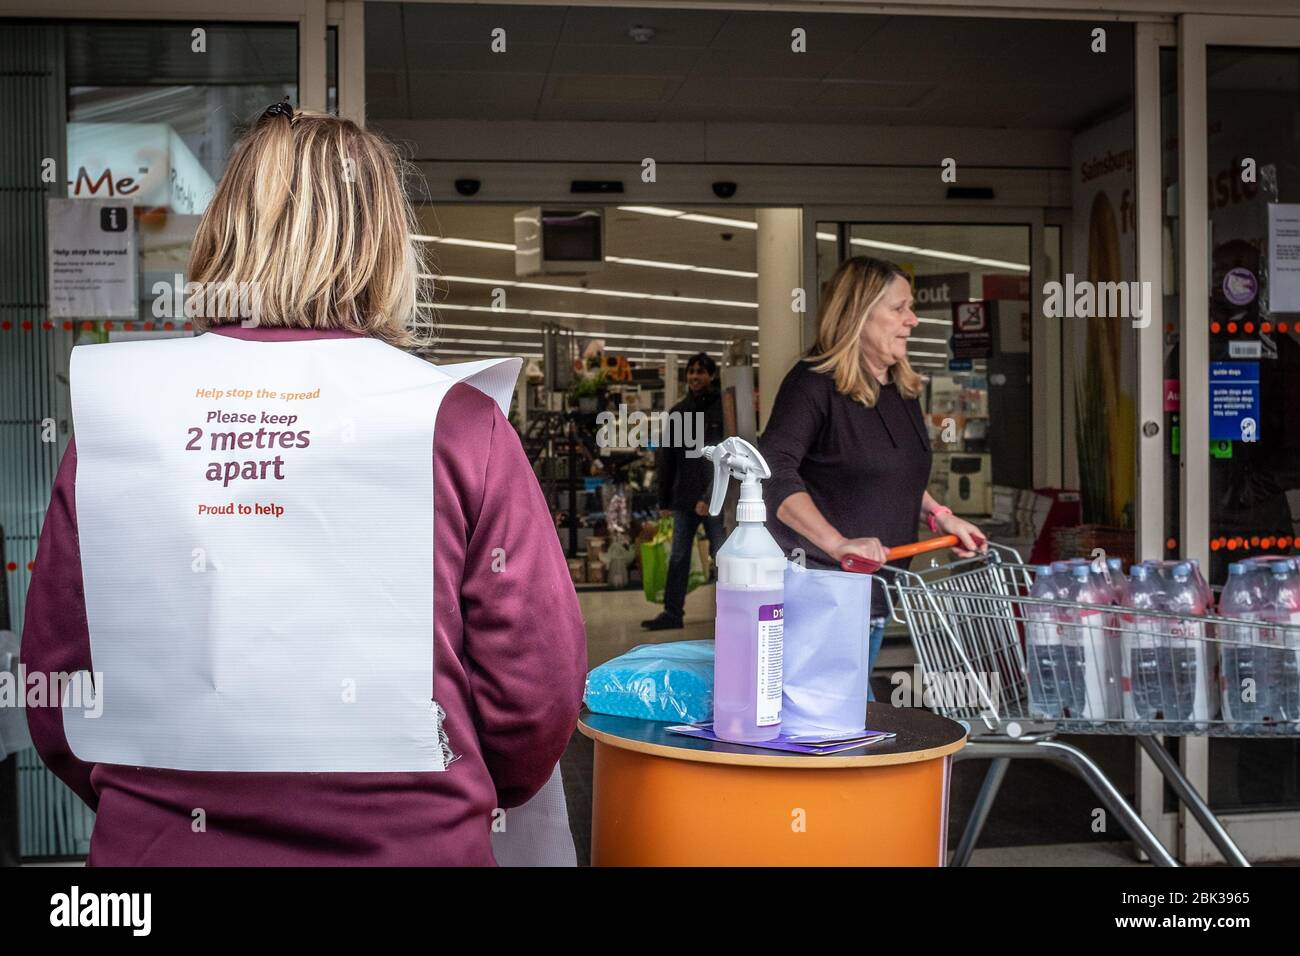 Il personale del supermercato Sainsbury in Inghilterra, Regno Unito, si trova fuori dall'ingresso con prodotti per la pulizia e la disinfezione durante la pandemia covid Foto Stock